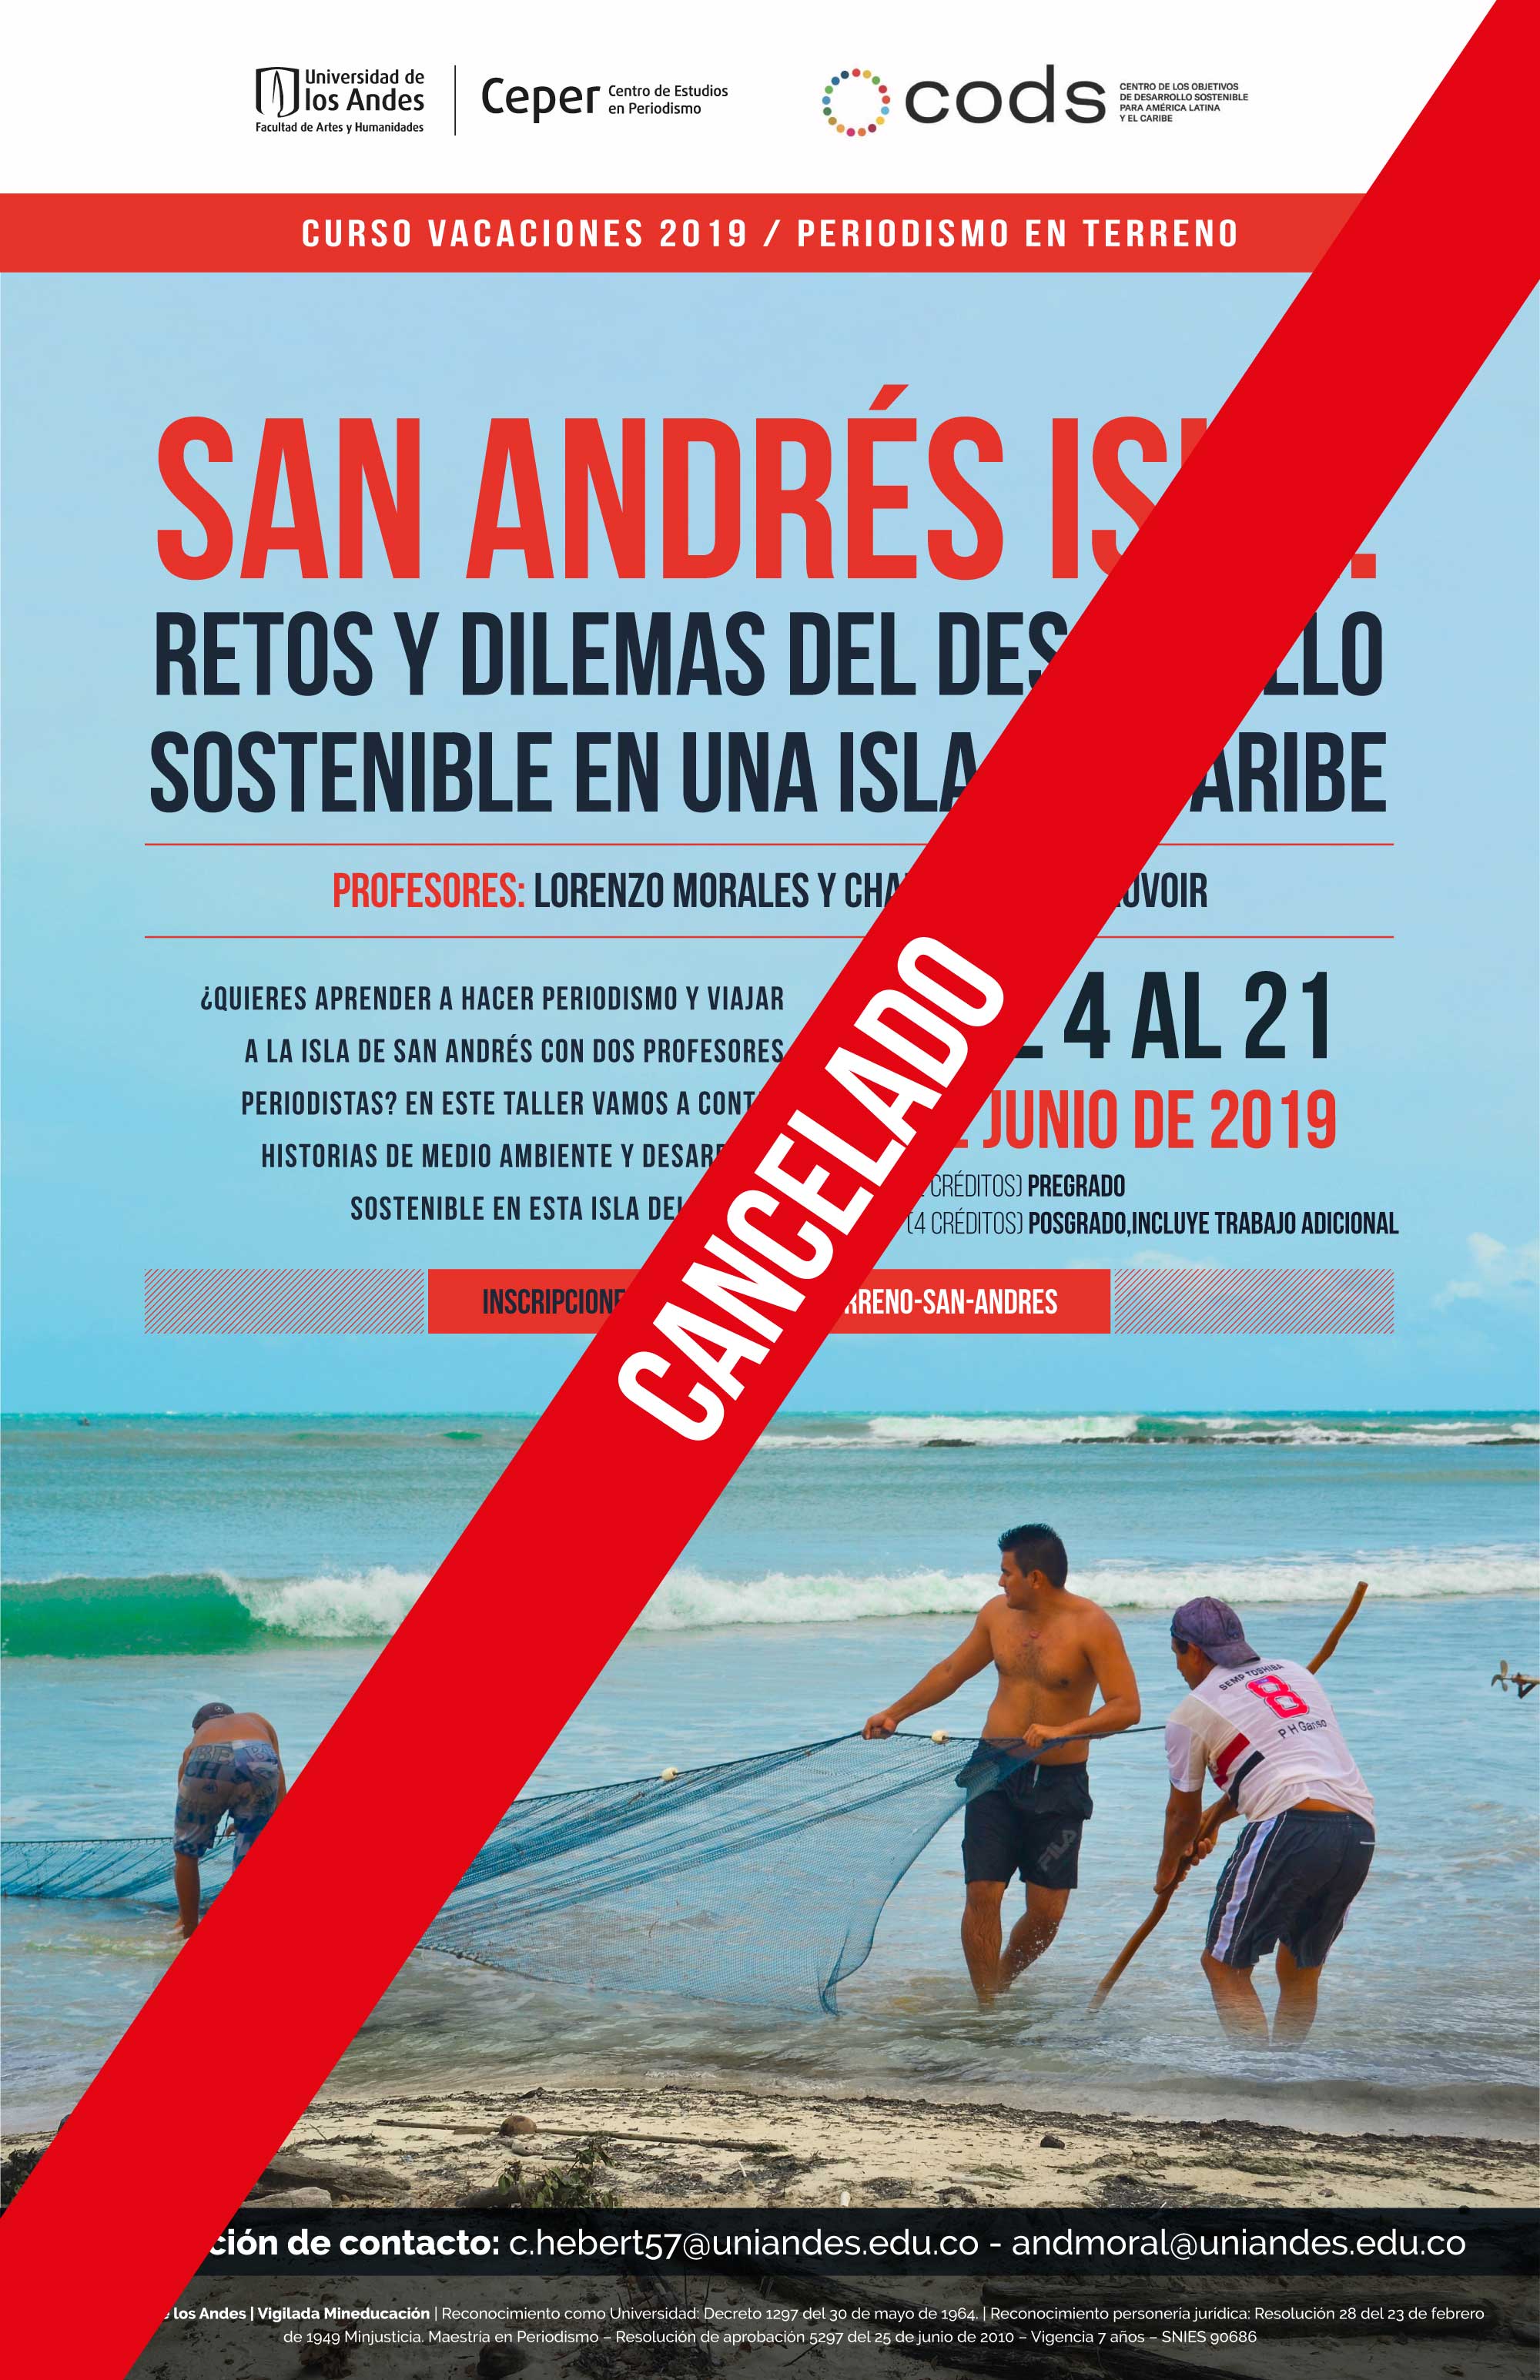 Cancelado: Curso de vacaciones 2019 / Periodismo en terreno – San Andrés isla: retos y dilemas del desarrollo sostenible en una isla del caribe